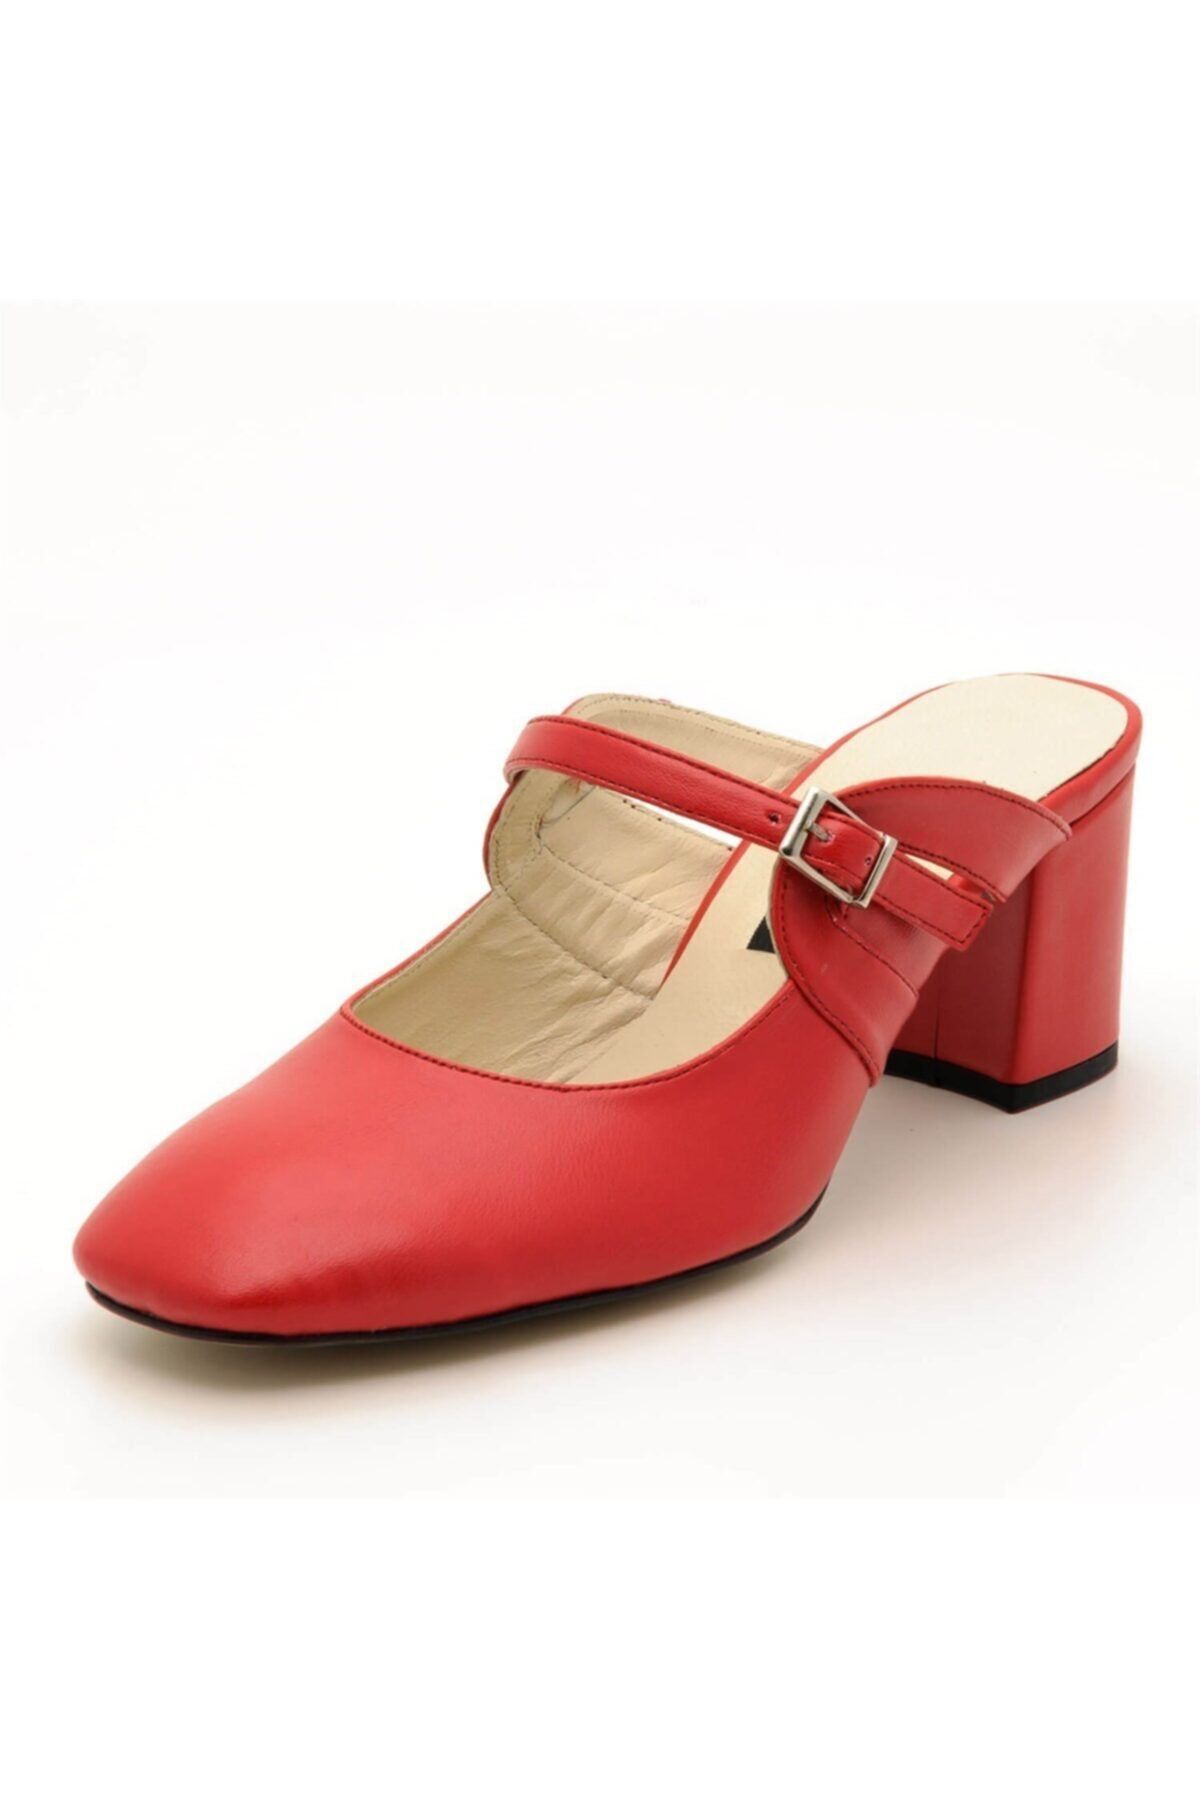 İriadam 2405 Kırmızı Büyük Numara Bayan Terlik Ayakkabı